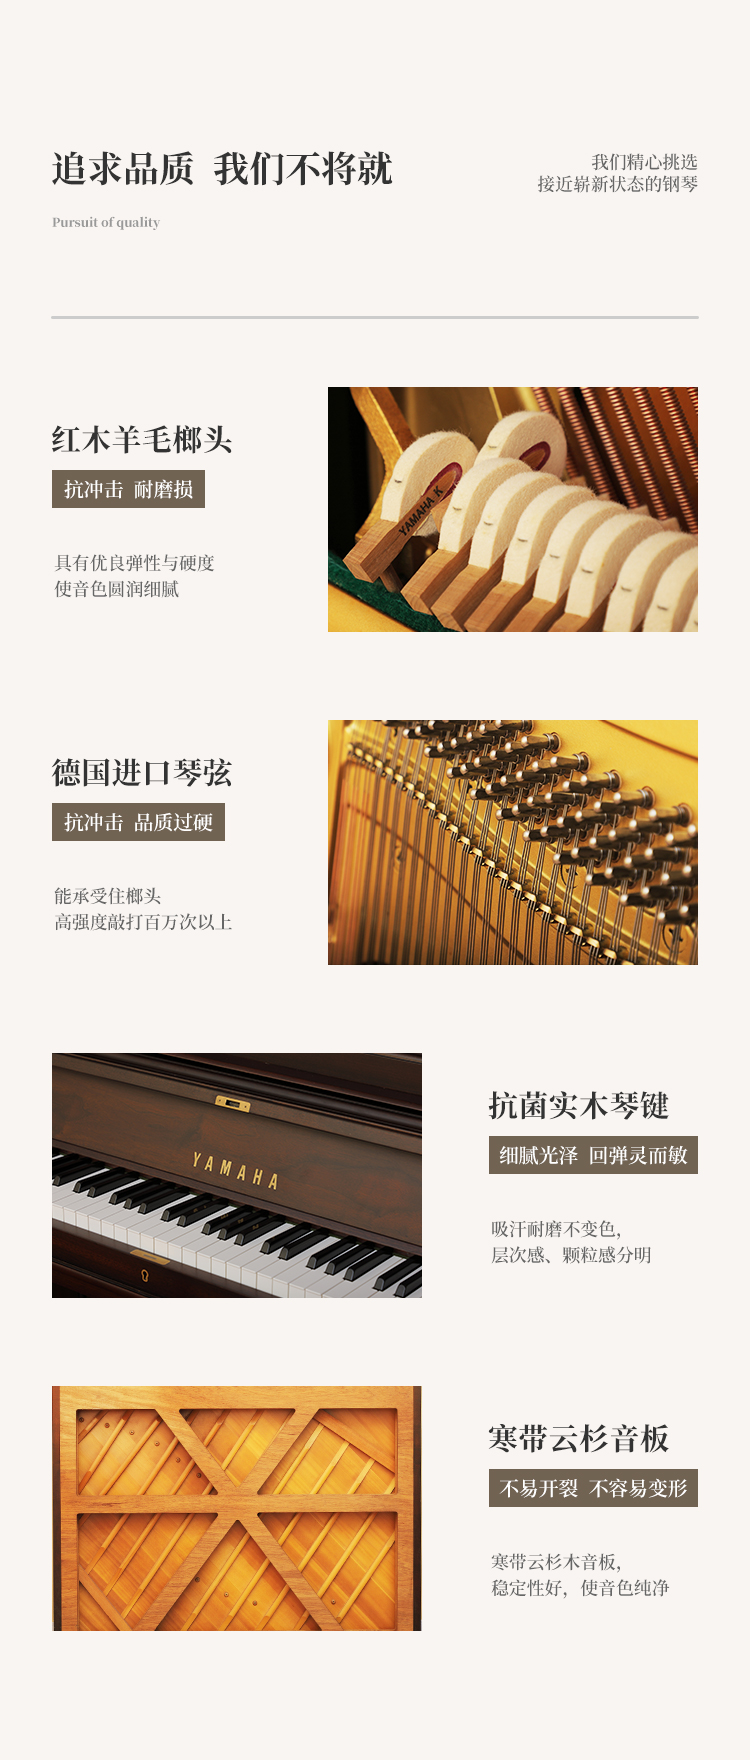 日本原装进口雅马哈钢琴 YAMAHA W201BW(图2)